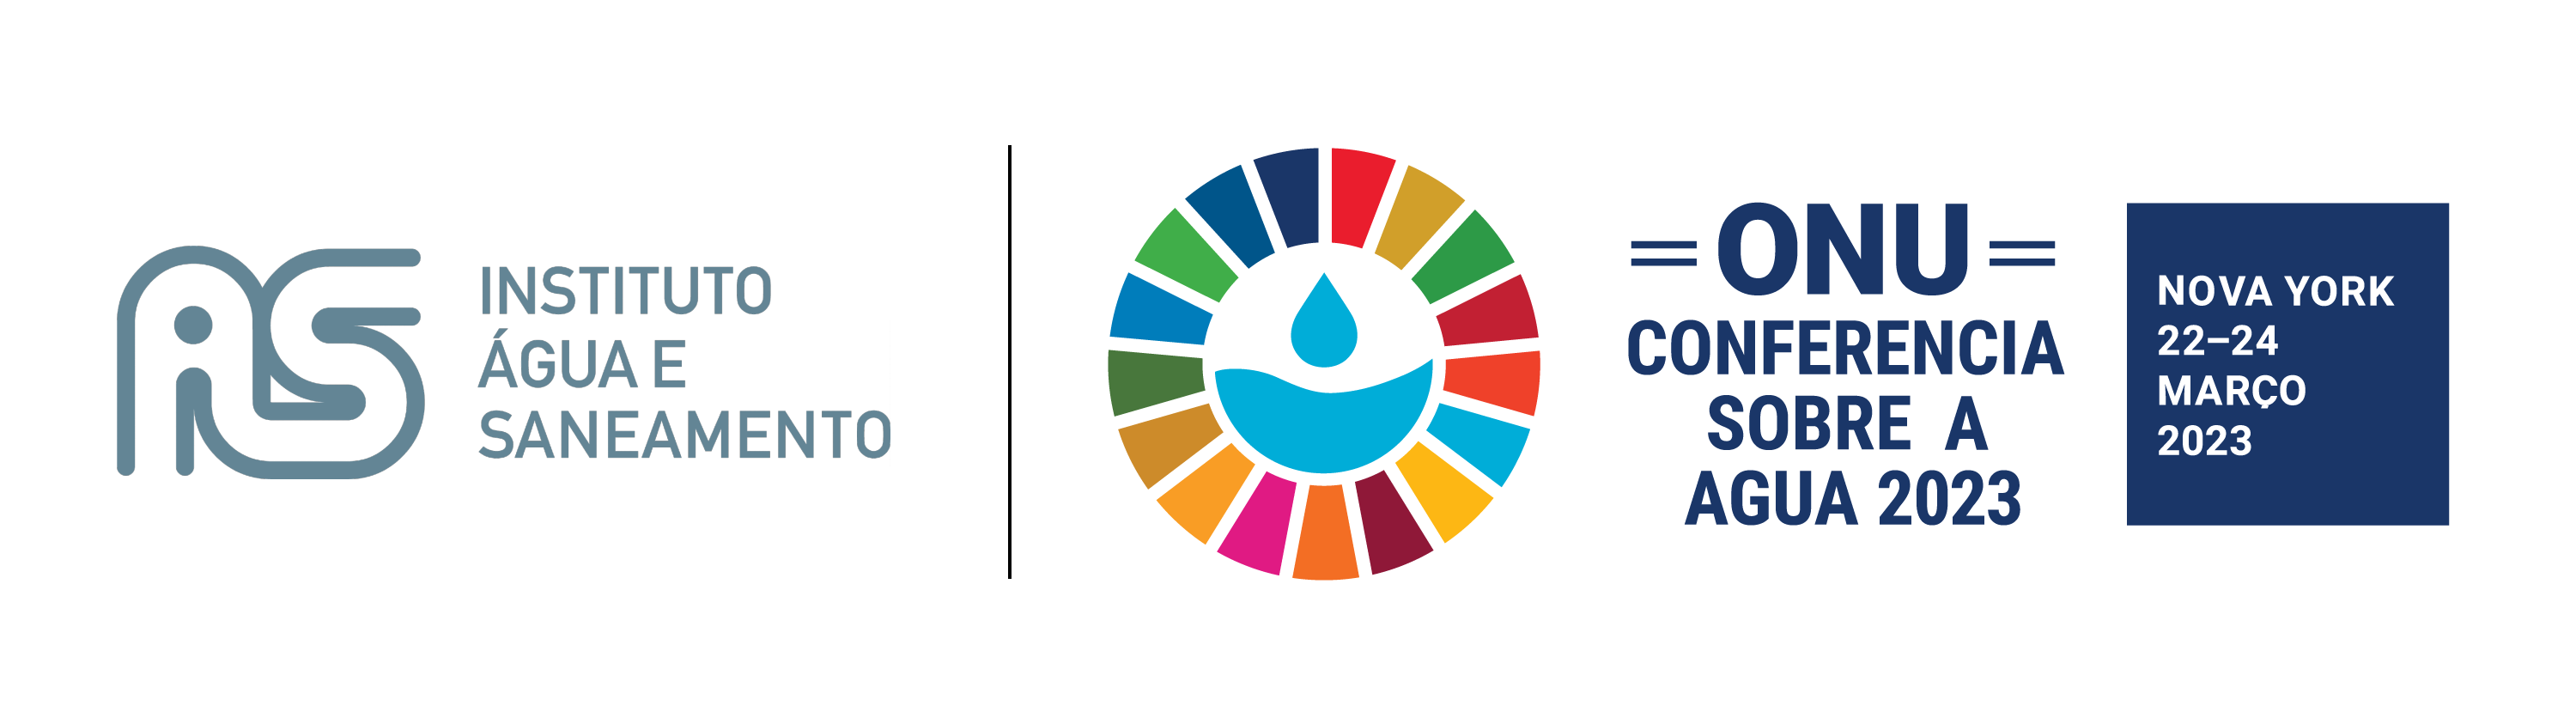 Logos do instituto Água e Saneamento, da Conferência sobra e Água 2023. O evento acontece em Nova York entre os dias 22 e 24 de março.